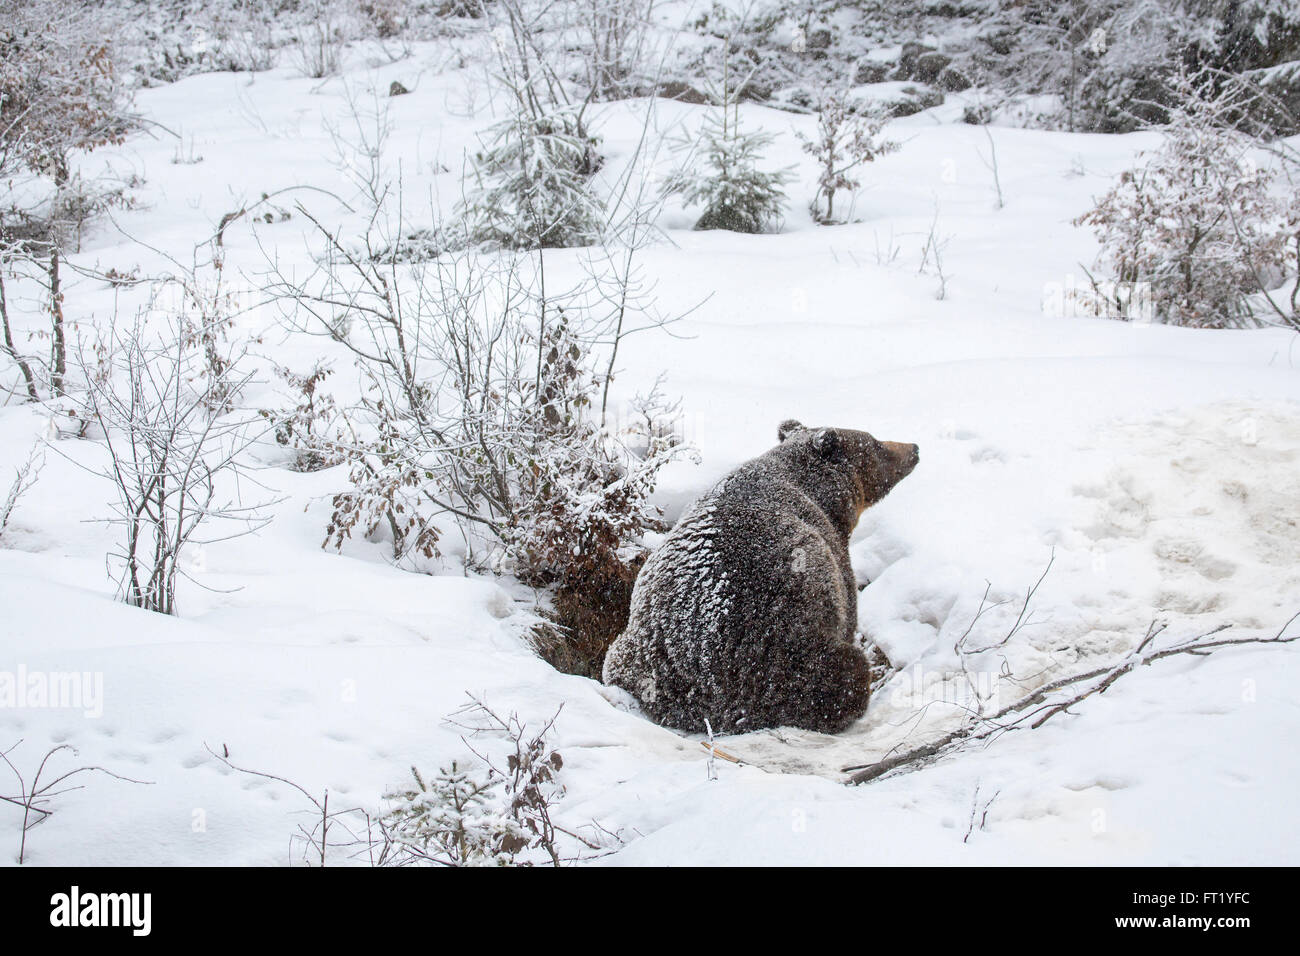 Ours brun (Ursus arctos) entrant dans la neige au cours de la douche automne / hiver Banque D'Images